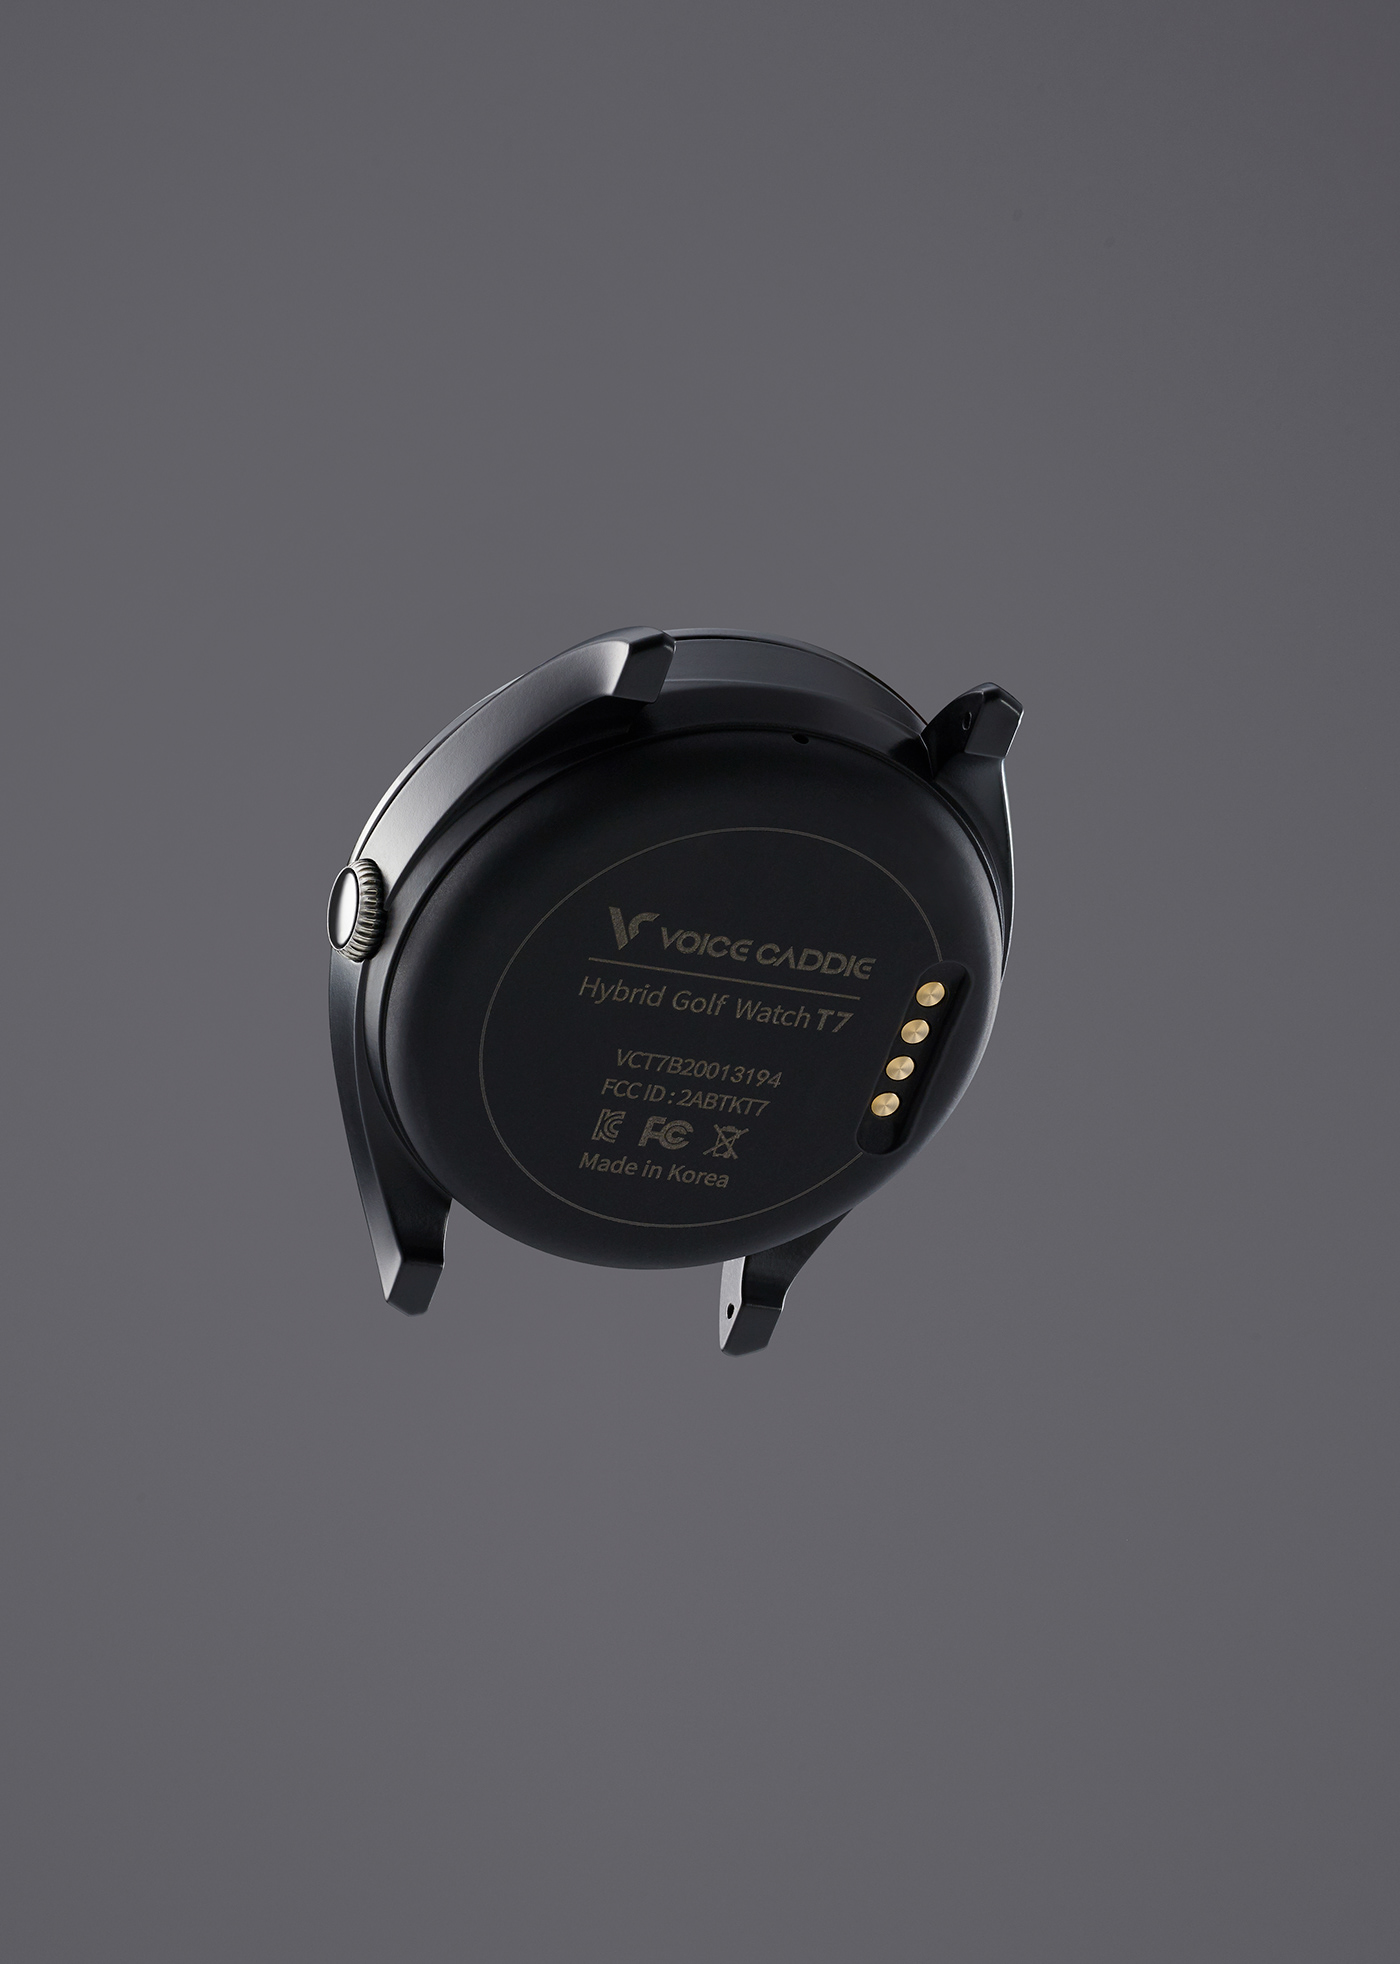 golf smart watch sports voice caddie watch design product